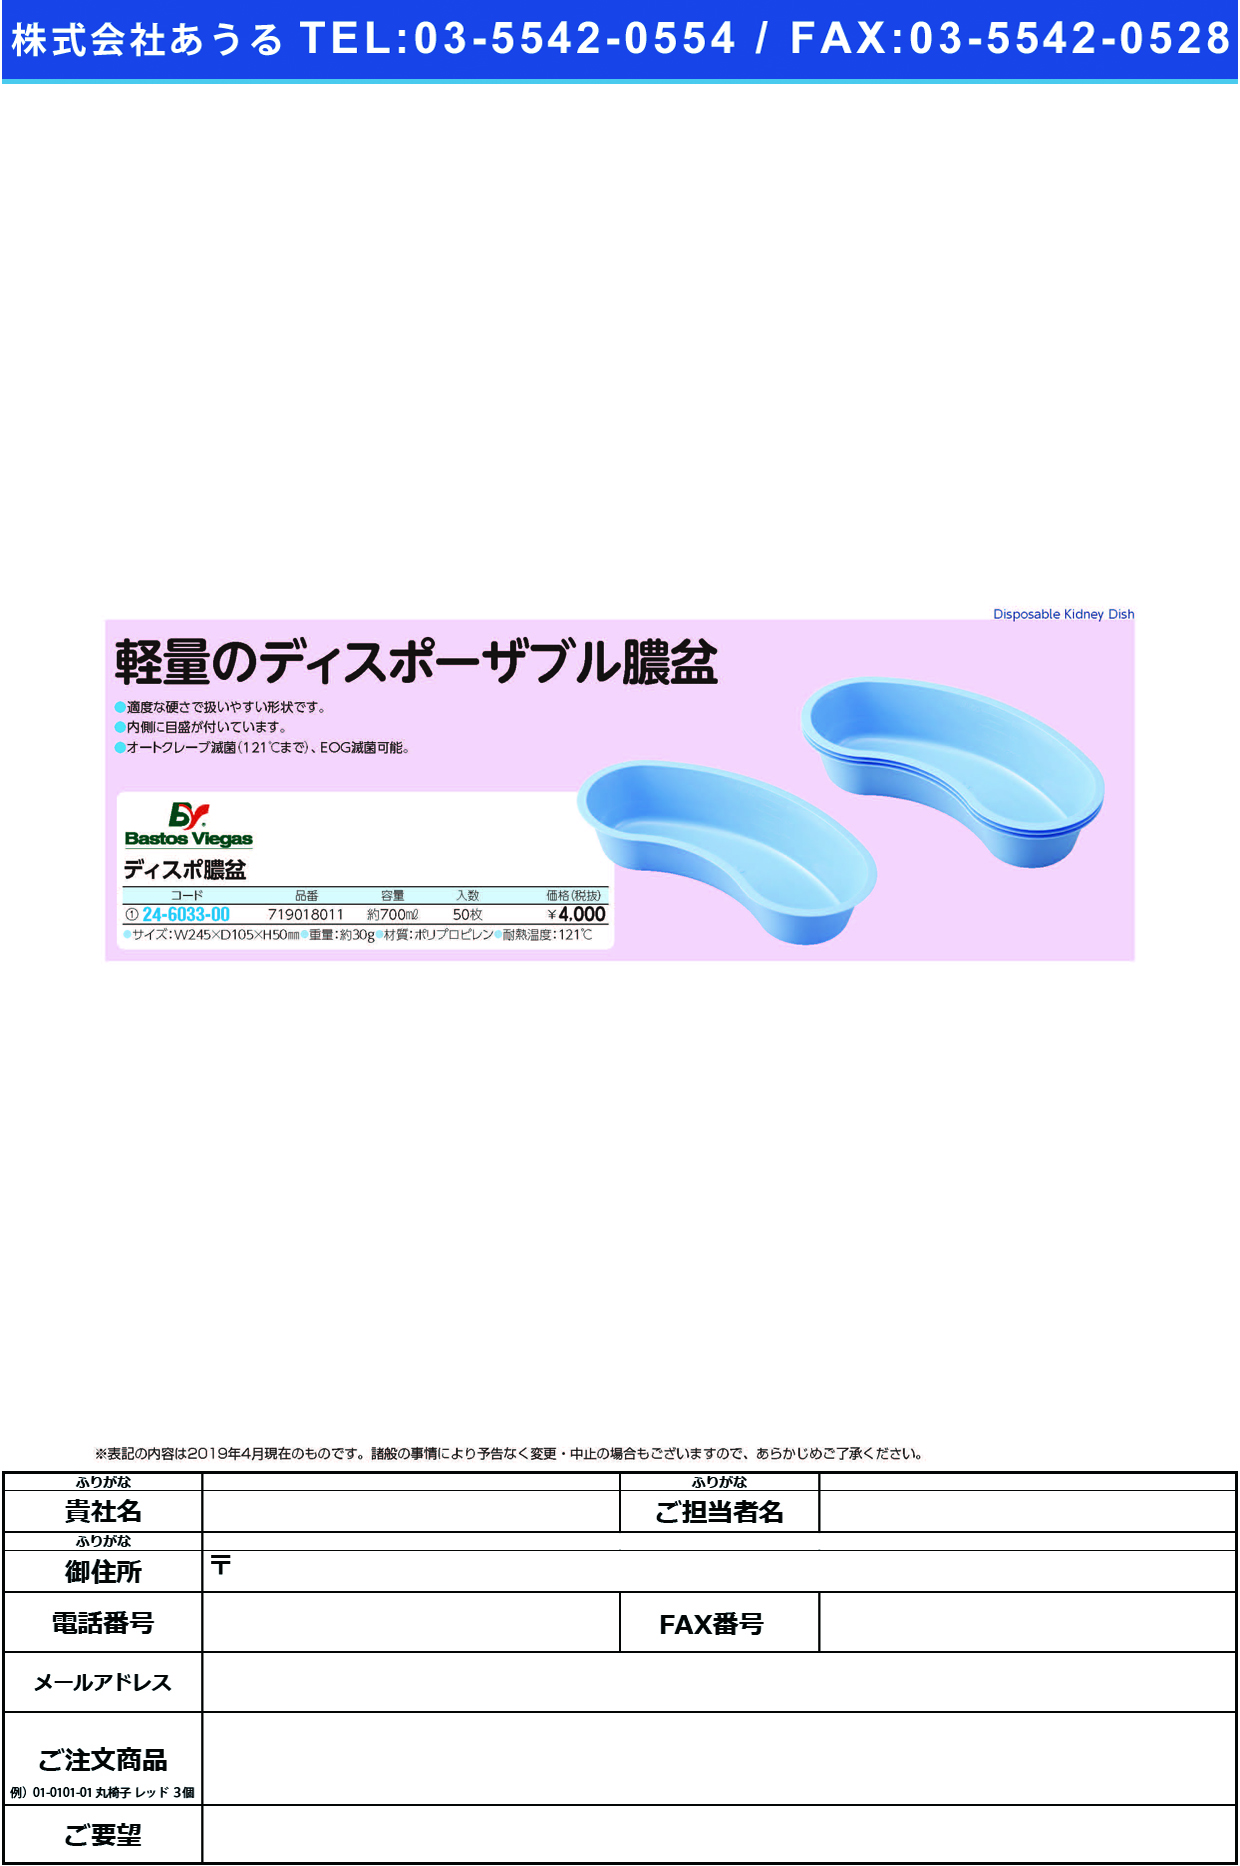 (24-6033-00)ディスポ膿盆 719018011(50ﾏｲｲﾘ) ﾃﾞｨｽﾎﾟﾉｳﾎﾞﾝ【1袋単位】【2019年カタログ商品】